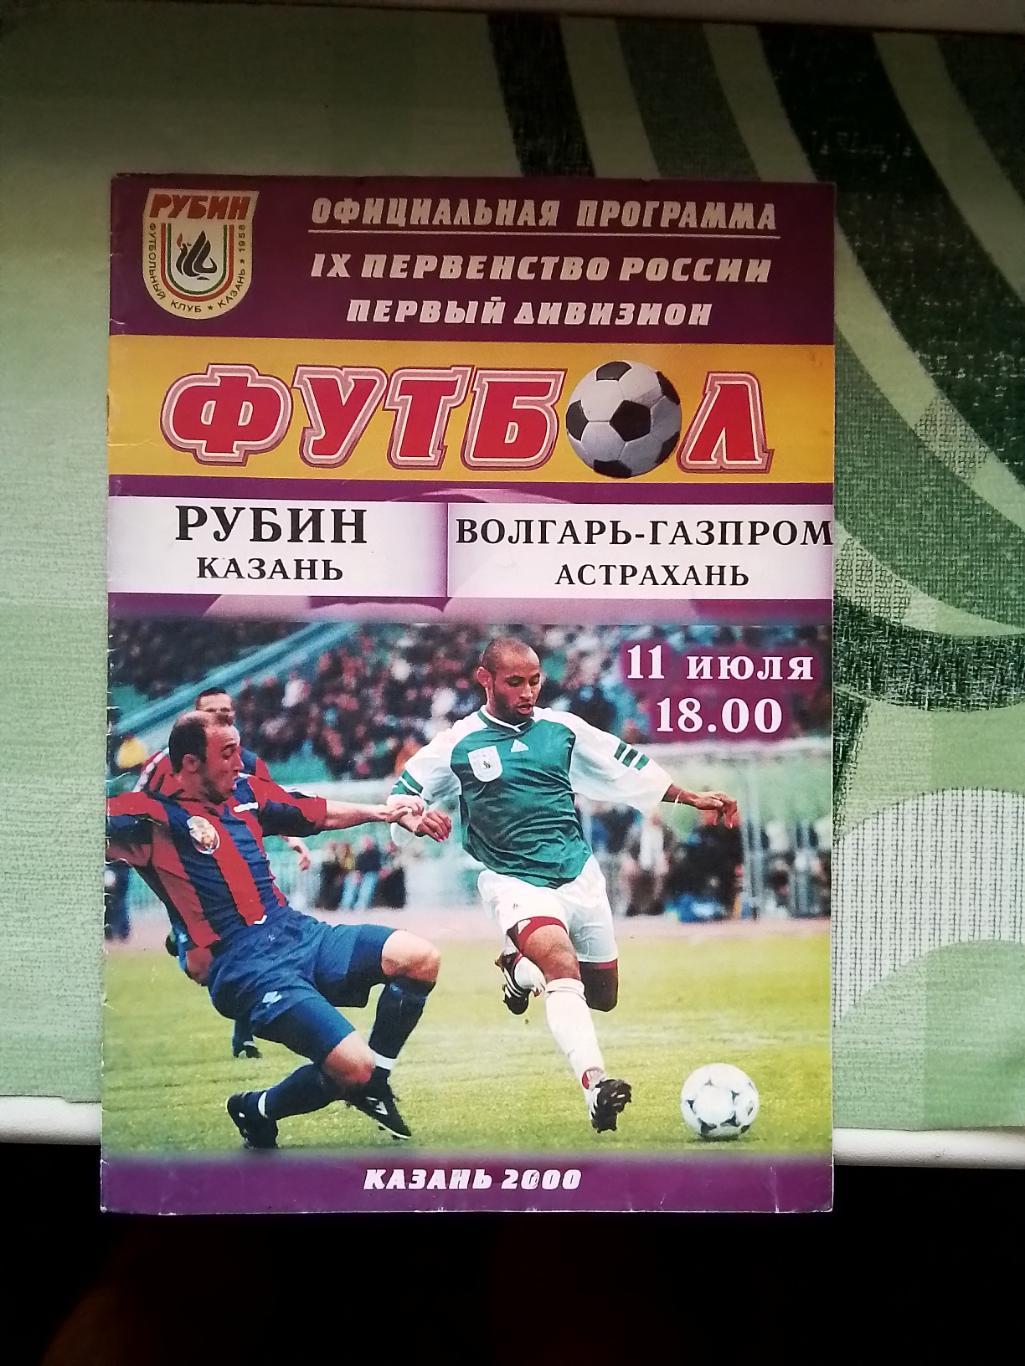 Рубин Казань - Волгарь - Газпром Астрахань 2000